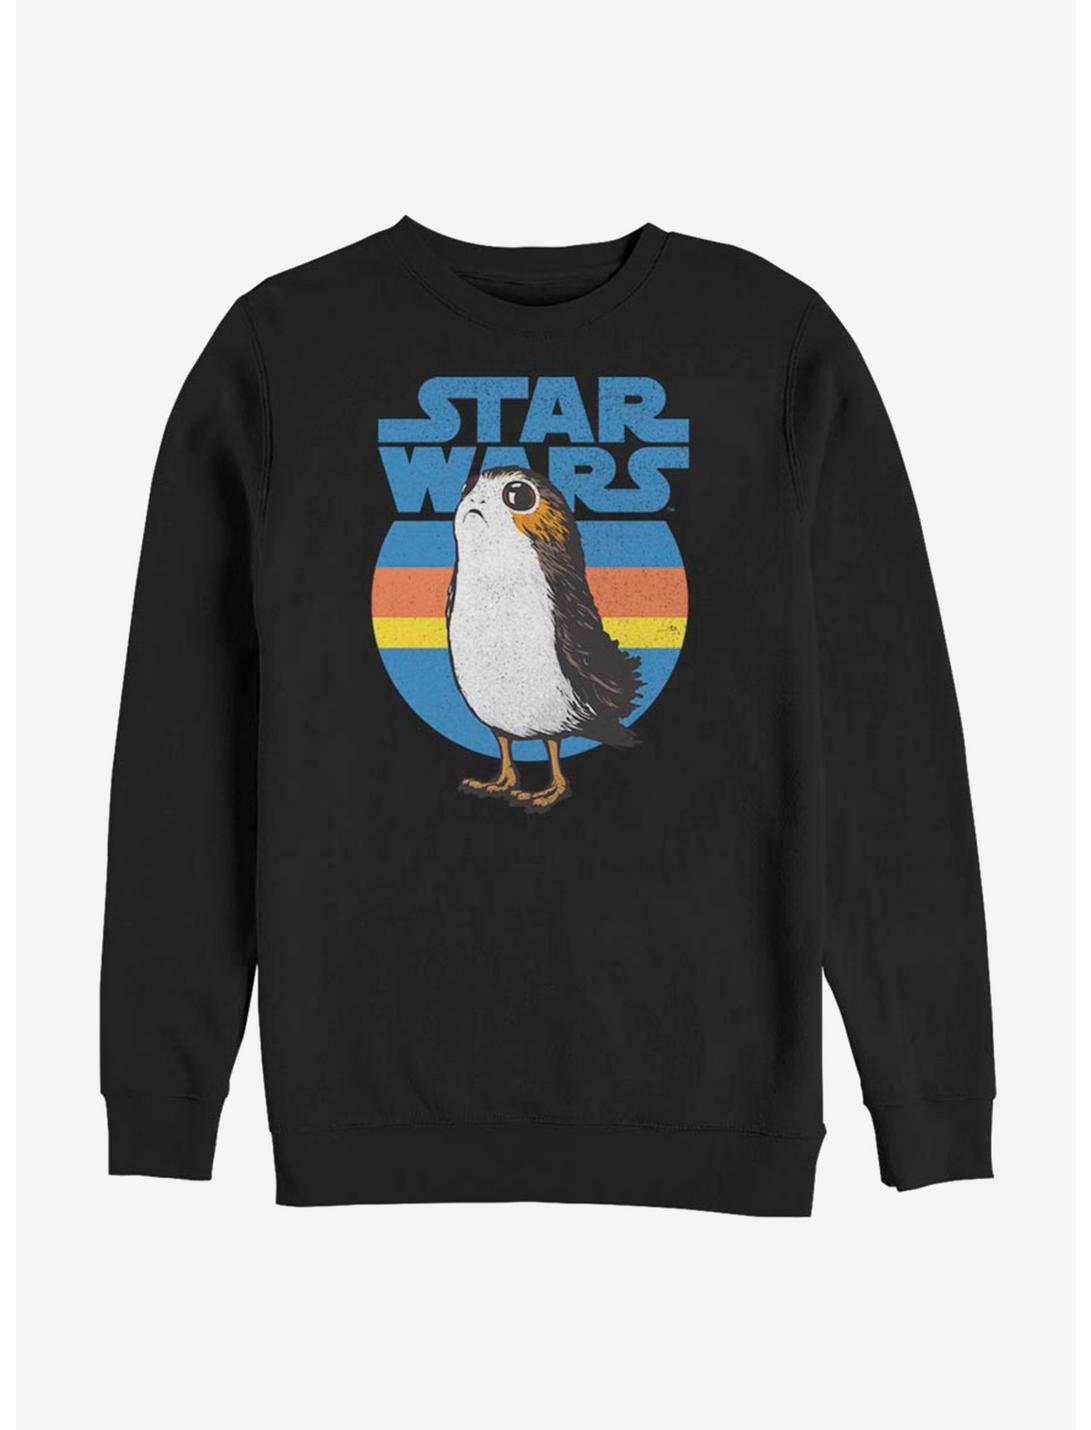 Star Wars Porg Simple Sweatshirt, BLACK, hi-res